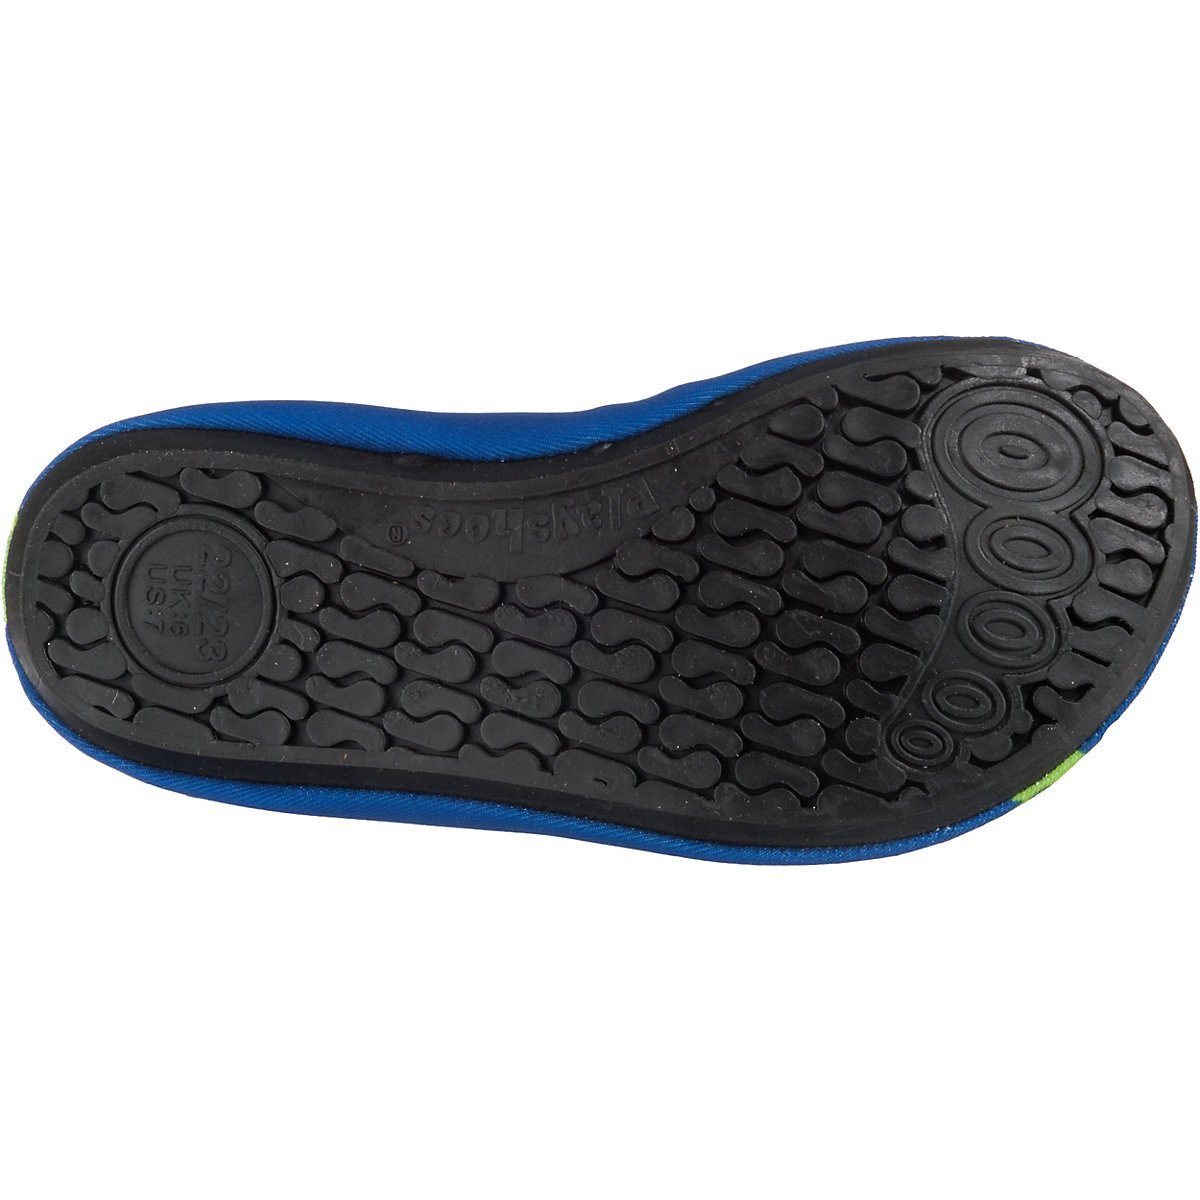 Playshoes mit Sohle Badeschuhe Wasserschuhe rutschhemmender Passform, Barfuß-Schuh Badeschuh Schwimmschuhe, flexible Motiv Krodkodil-blau